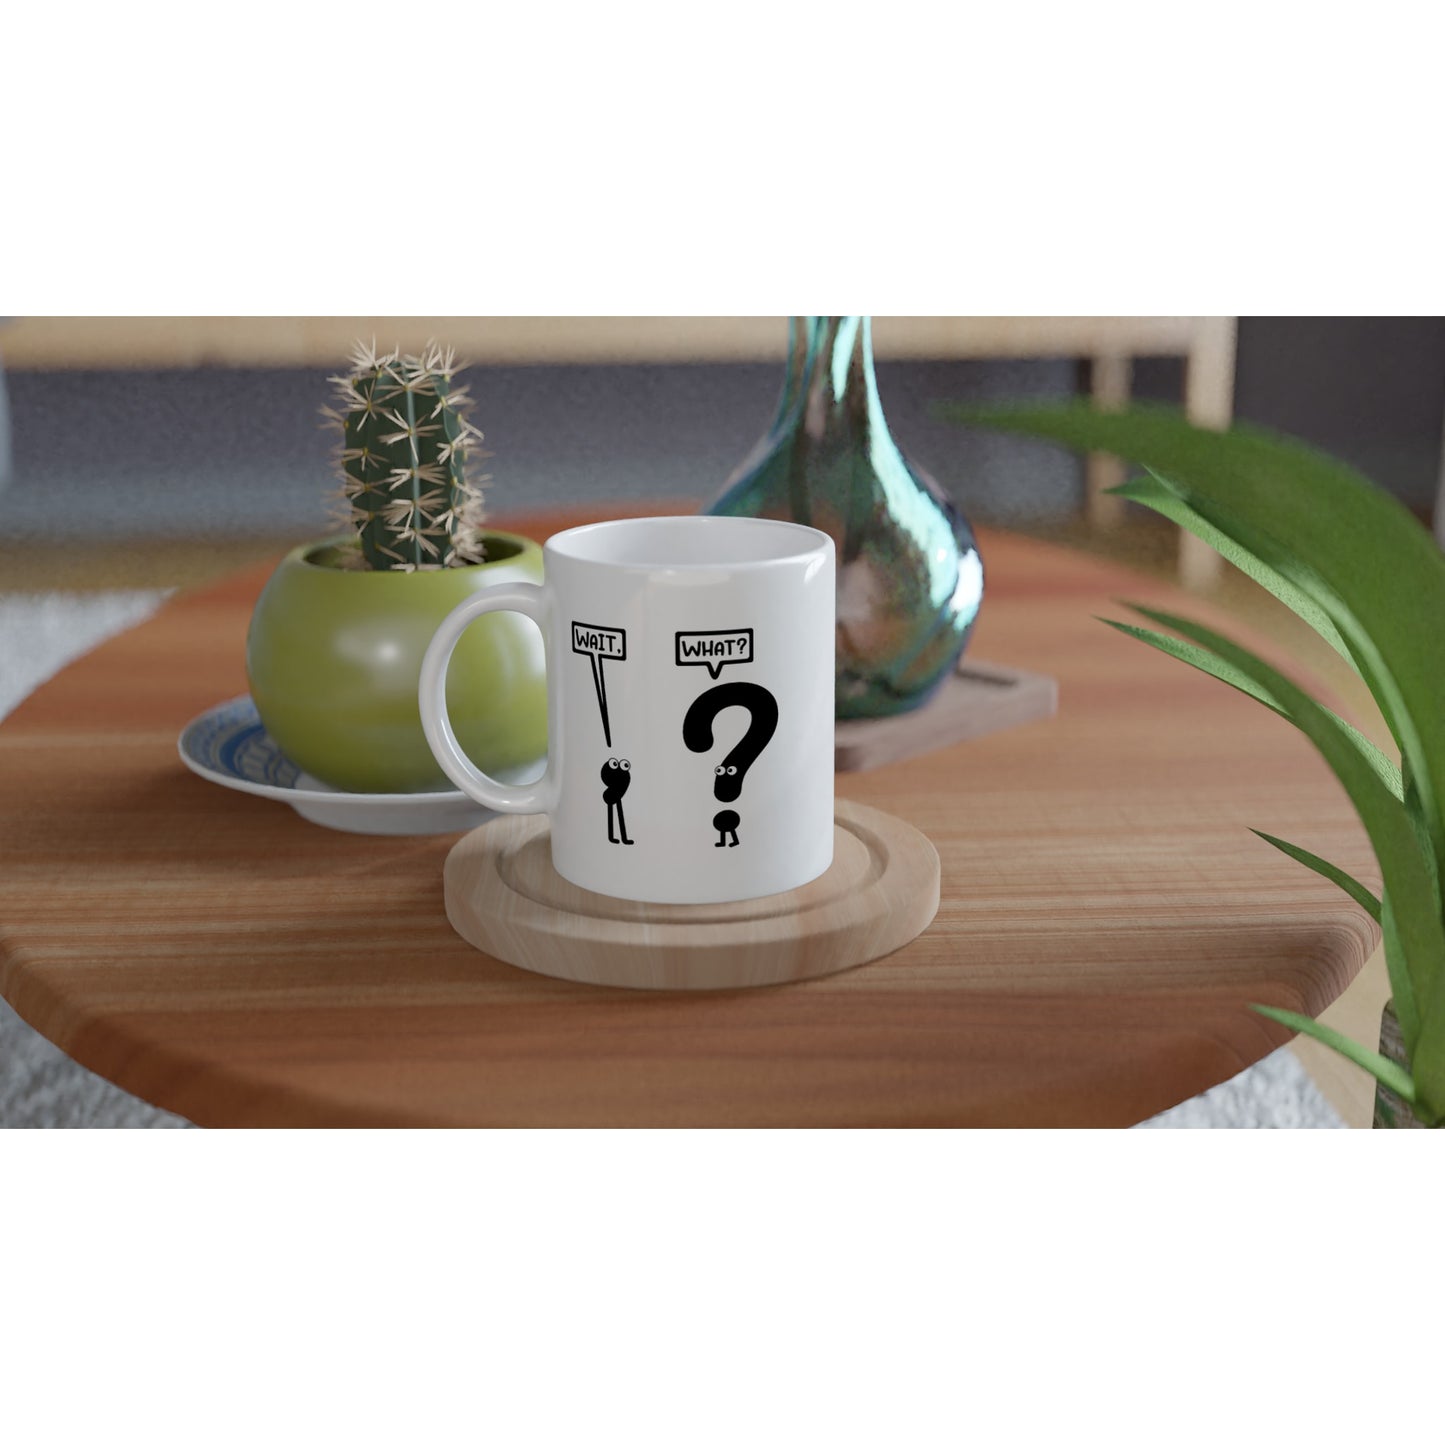 Wait, What? - White 11oz Ceramic Mug - Mister Snarky's